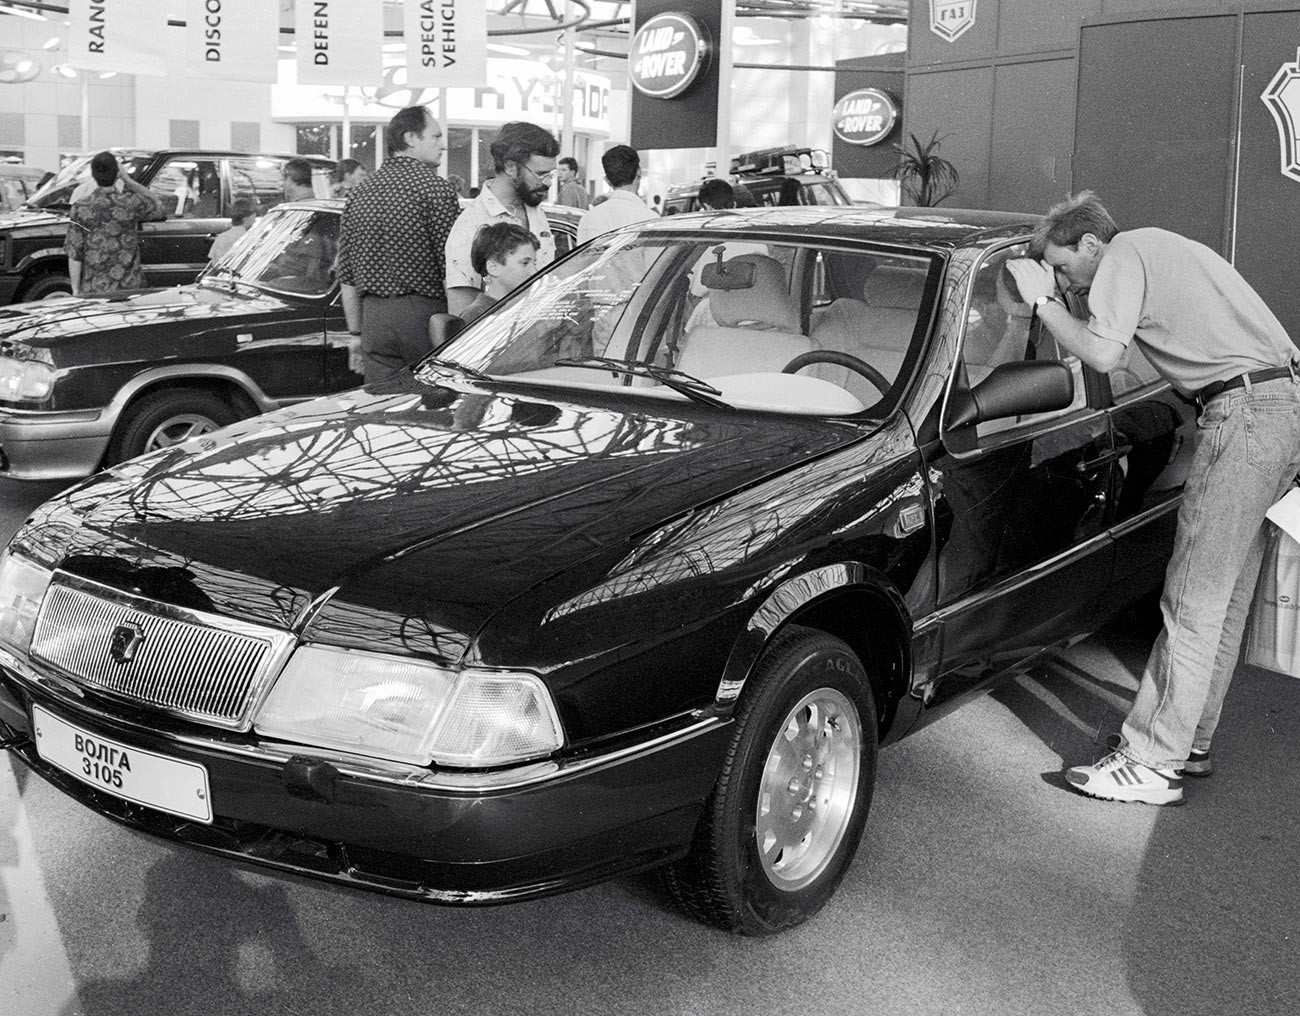 Посетители на Меѓународниот саем на автомобили 1995 година разгледуваат автомобил ГАЗ-3105 „Волга“.

